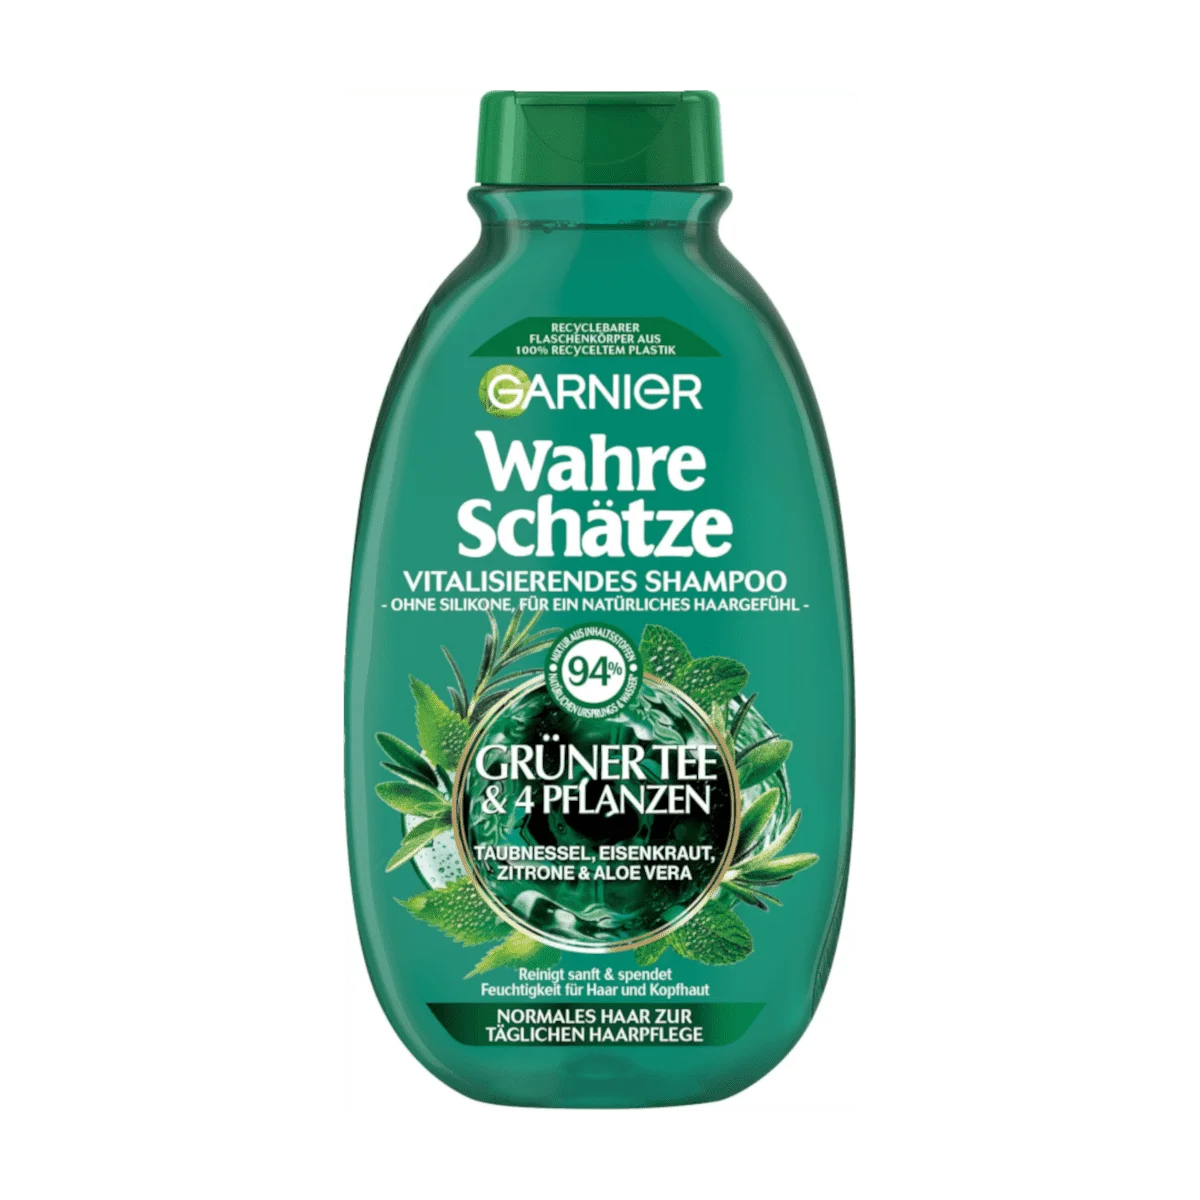 Garnier Wahre Schätze Vitalisierendes Shampoo Grüner Tee & 4 Pflanzen, 250 ml